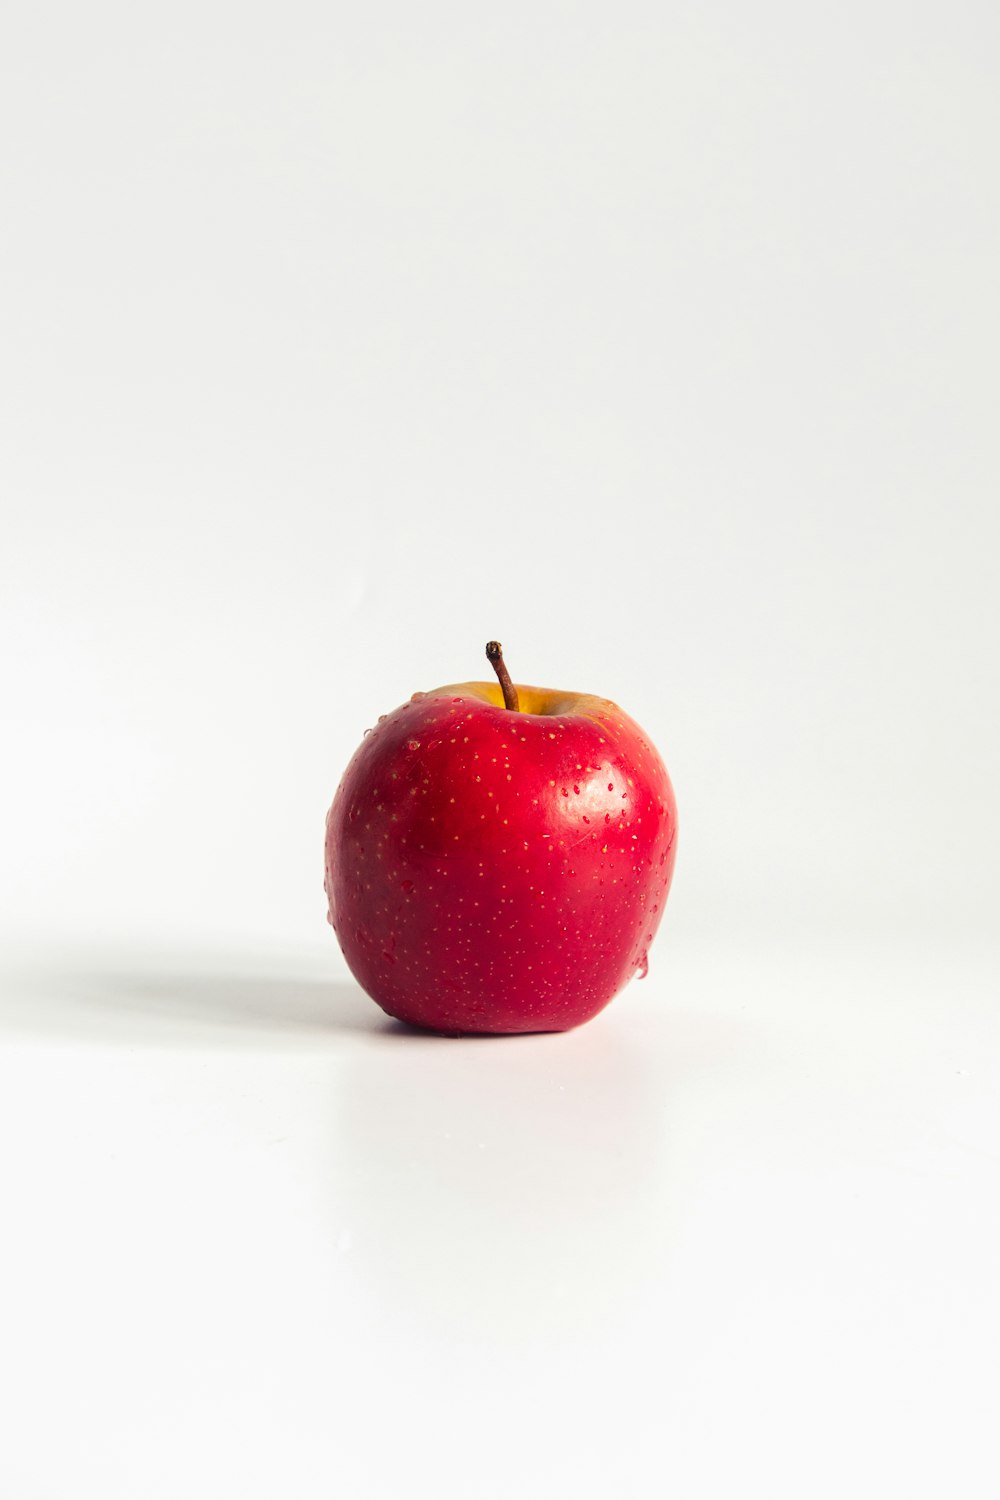 maçã vermelha na superfície branca